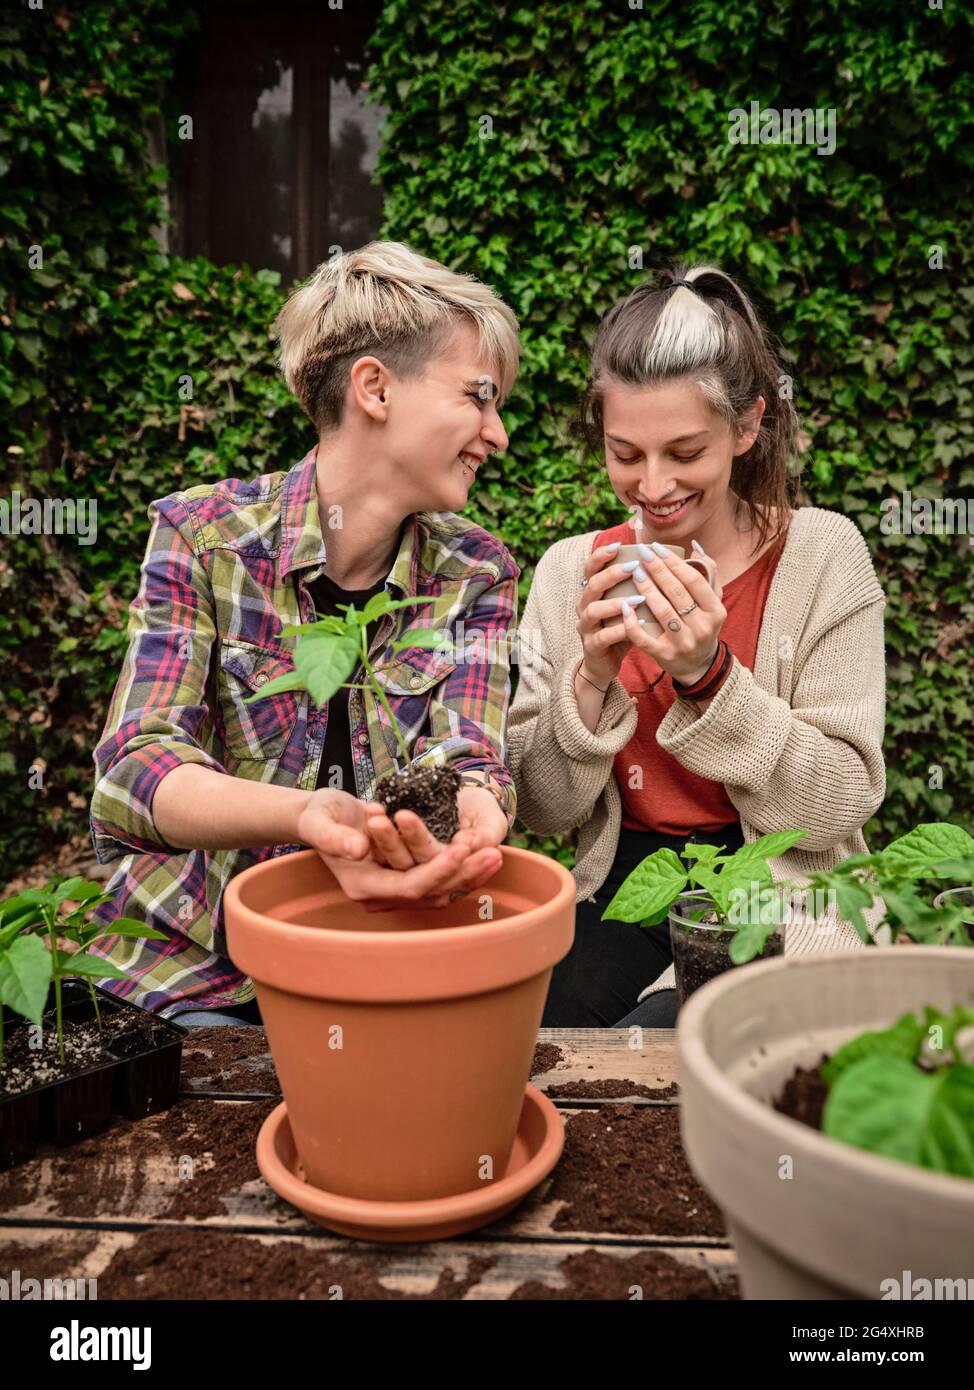 Lächelnde Frau, die eine Freundin beim Kaffee beim Pflanzen im Garten ansieht Stockfoto